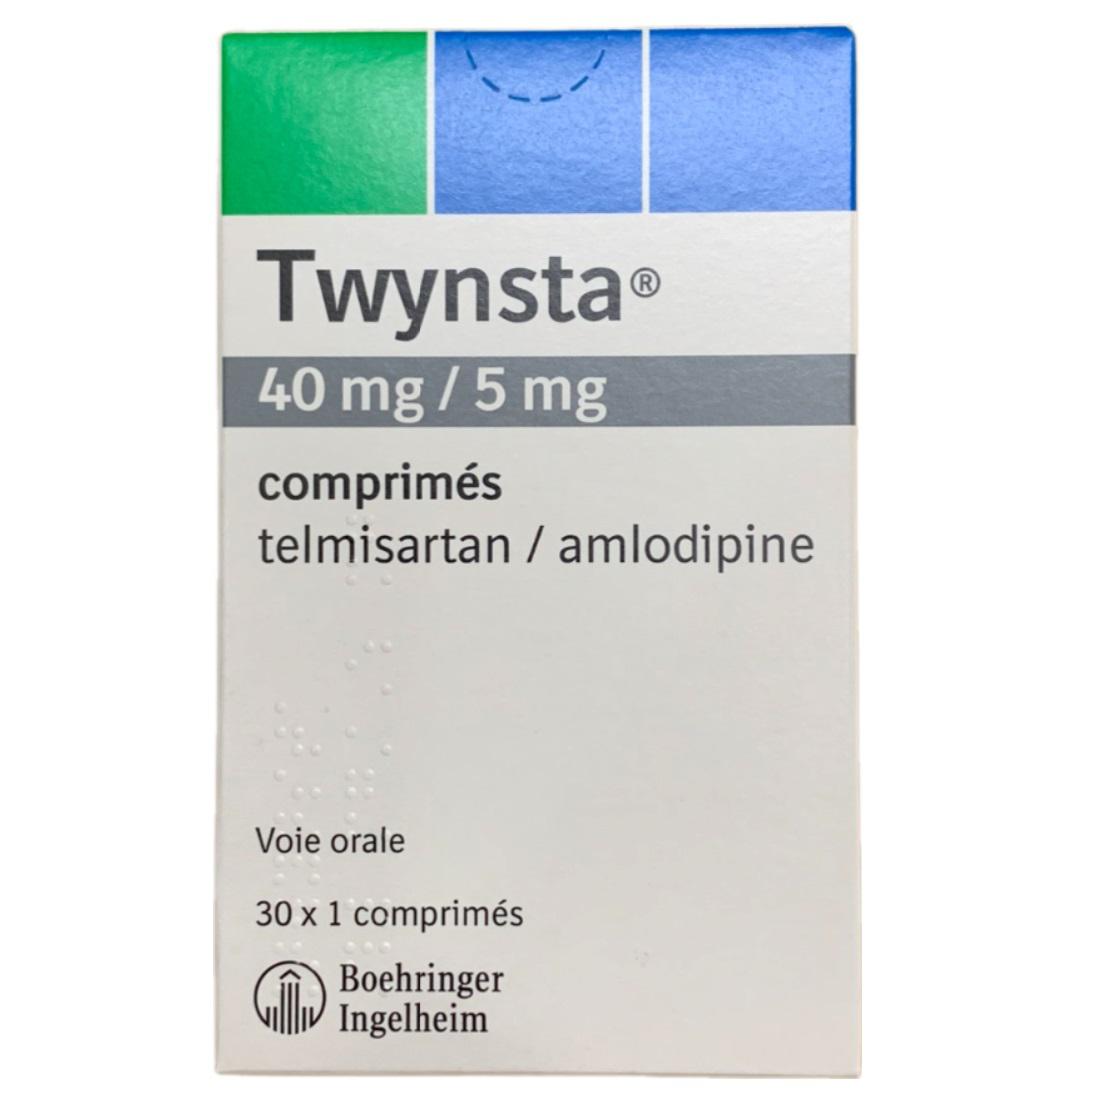 Twynsta 40/5  (Telmisartan, Amlodipine) Boehringer Ingelheim  (H/30v)